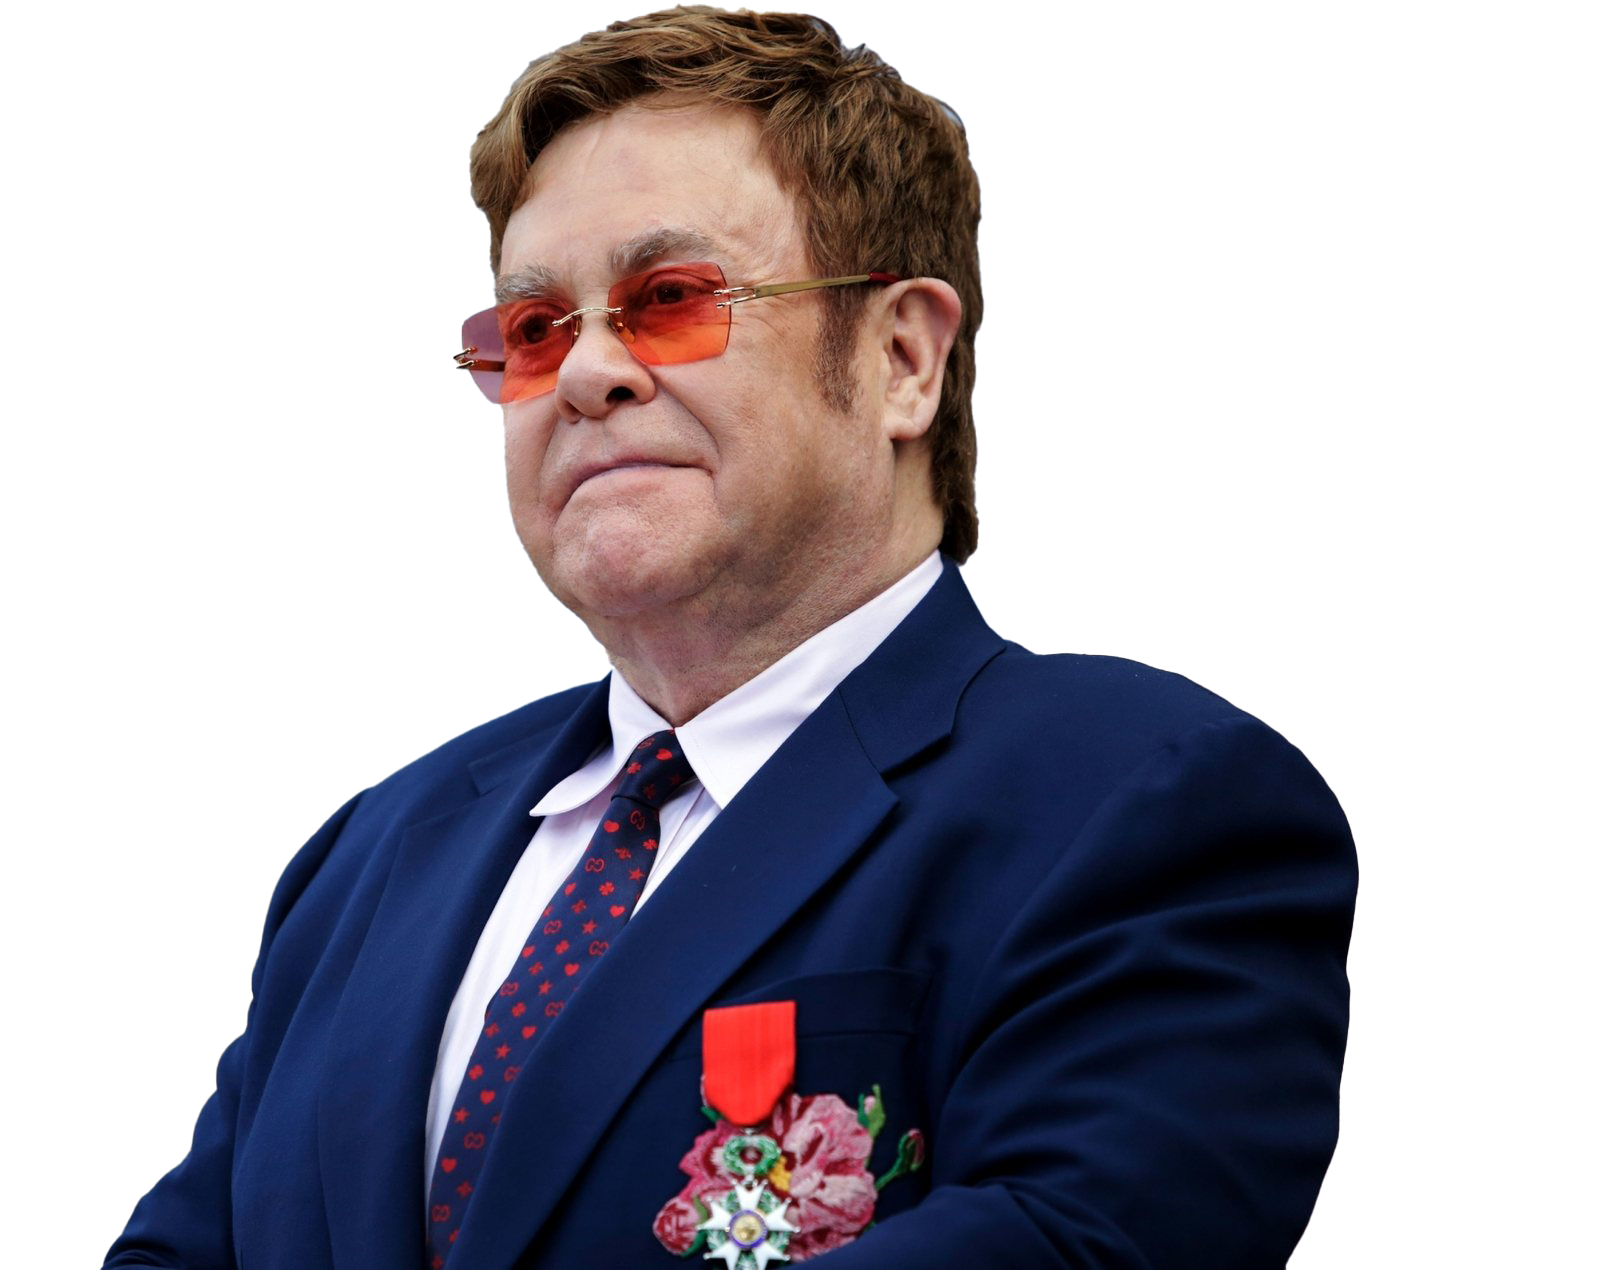 Elton John Télécharger limage PNG Transparente